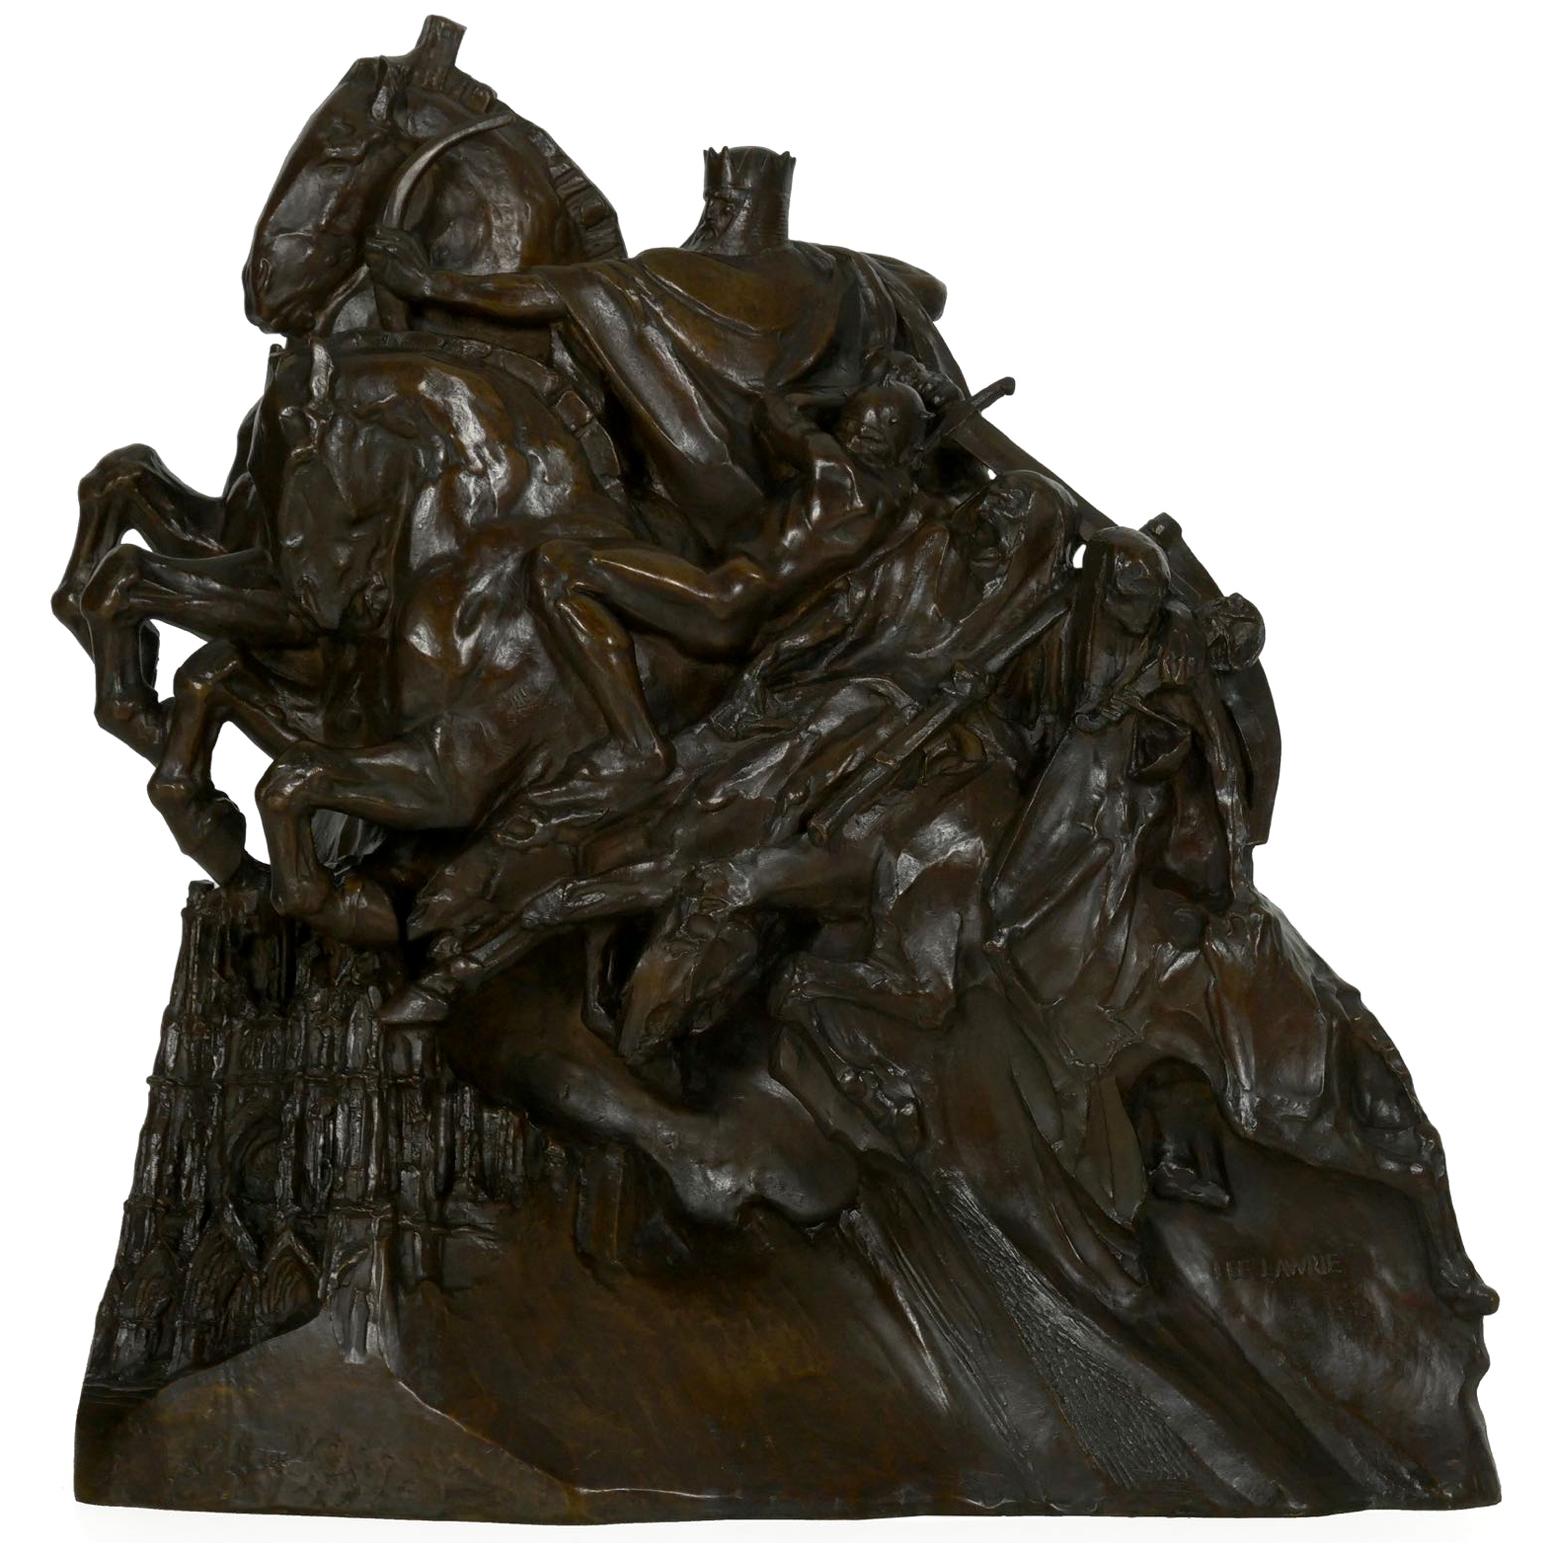 Art Deco Bronze Sculpture of “Four Horsemen of Apocalypse” by Lee Lawrie